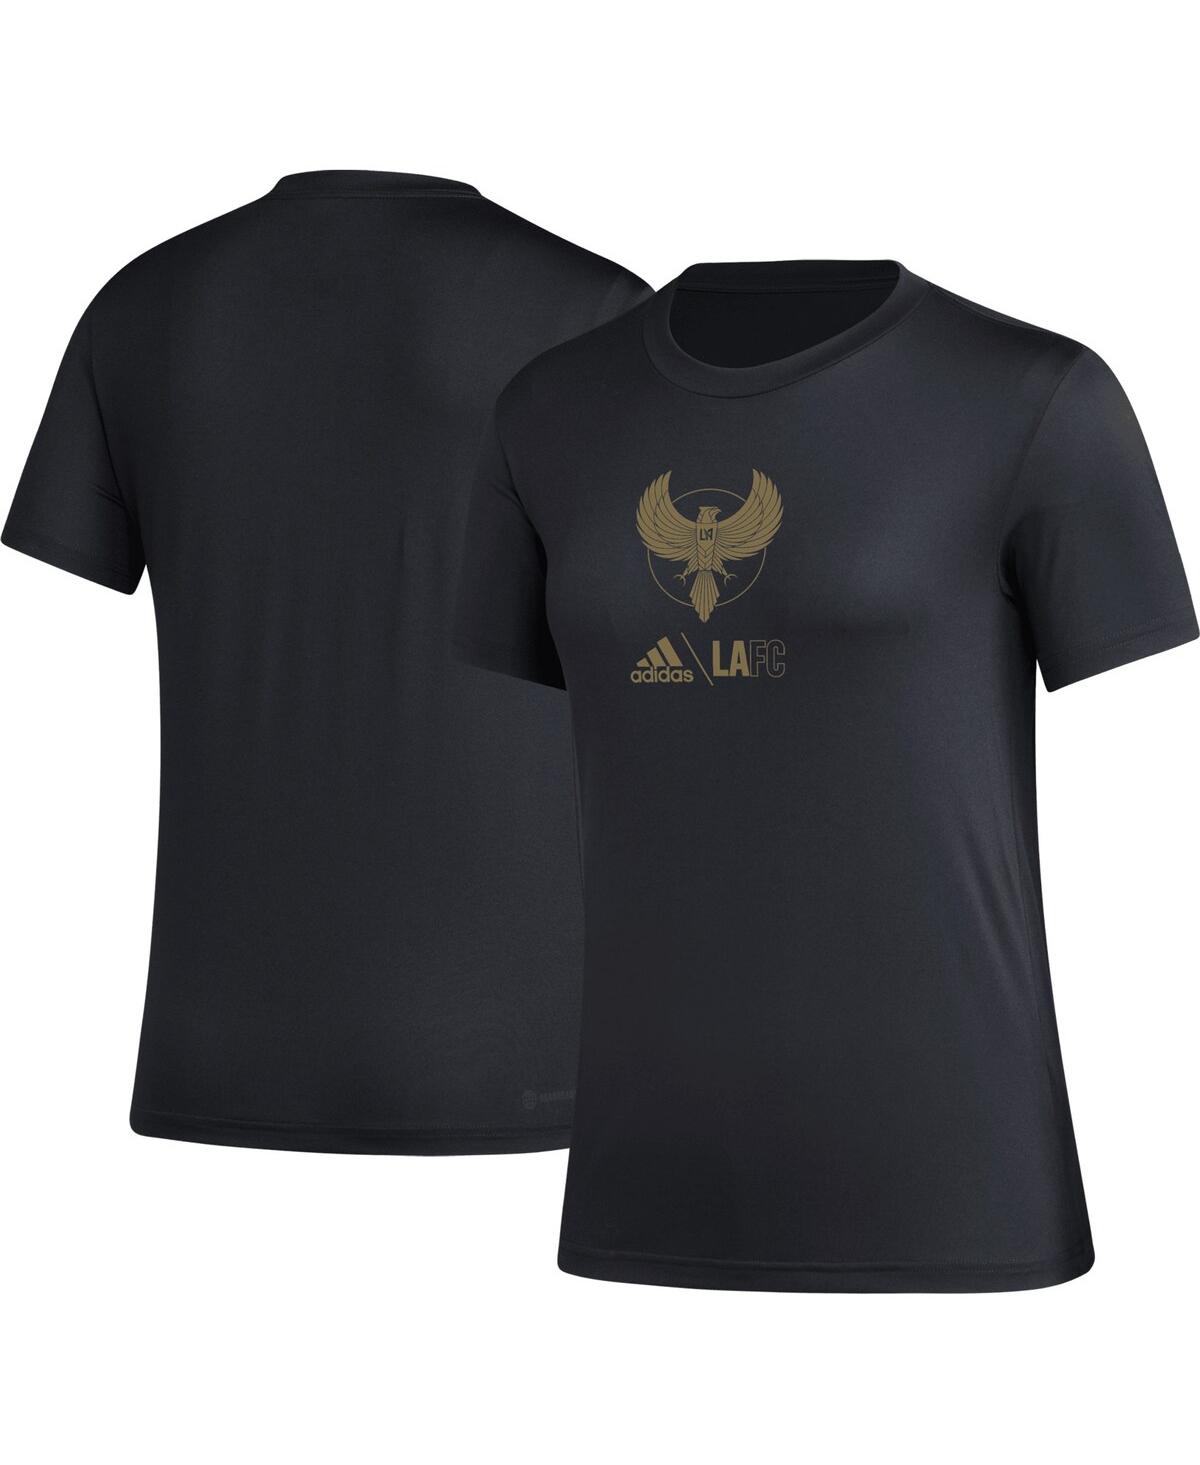 Women's adidas Black Lafc Aeroready Club Icon T-shirt - Black